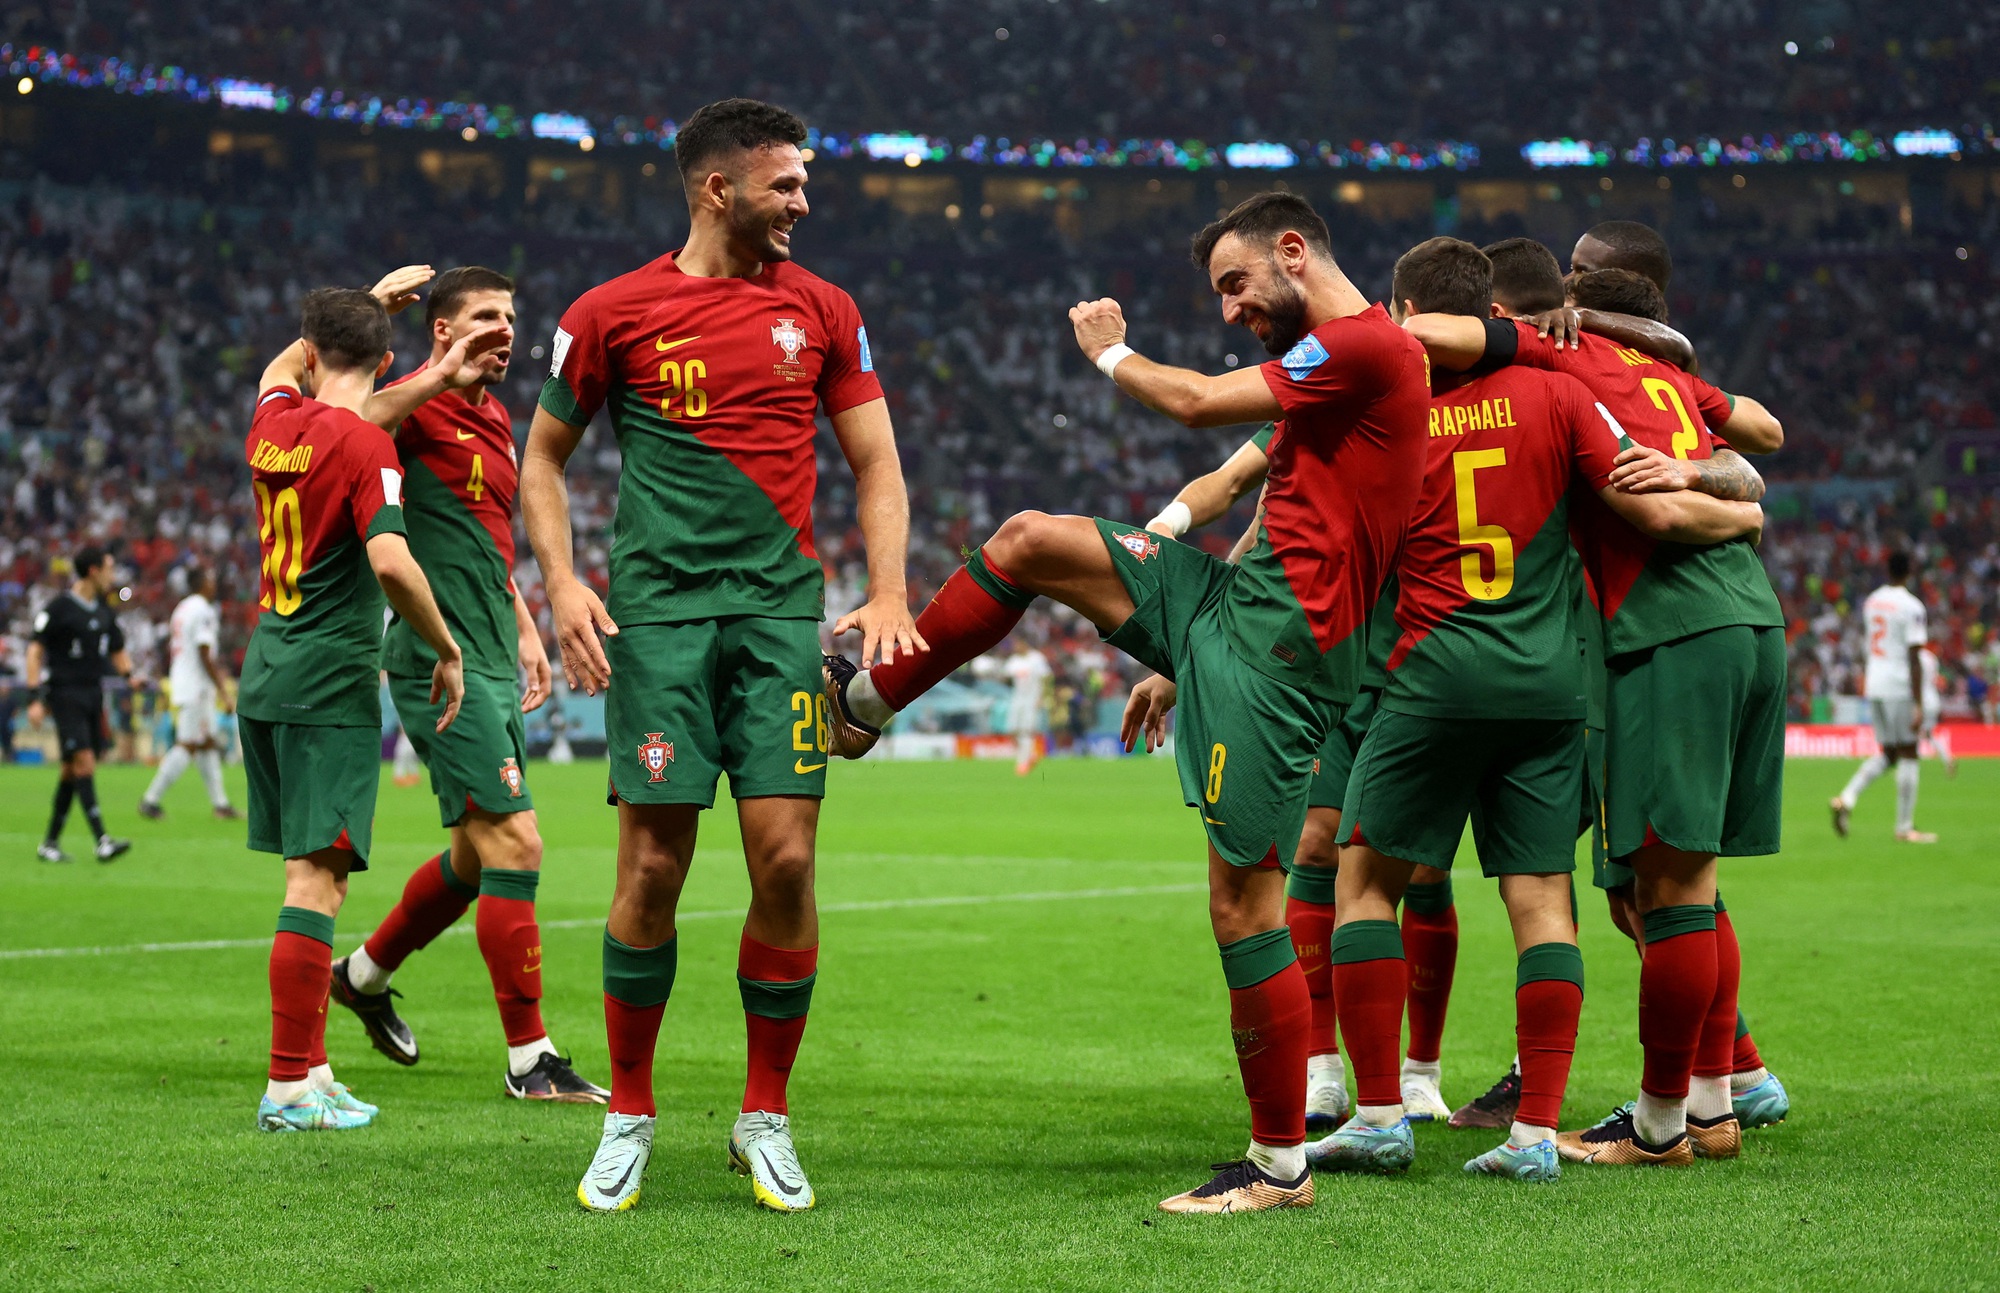 Ronaldo - một siêu sao của bóng đá thế giới đang tỏa sáng, cùng với đội ĐT Bồ Đào Nha giành chiến thắng trước Thụy Sĩ. Mặc dù có sự dự bị một thời gian nhưng thành tích của anh vẫn rất ấn tượng, giúp đội tuyển Bồ Đào Nha tiến tới những vòng đấu cuối cùng.